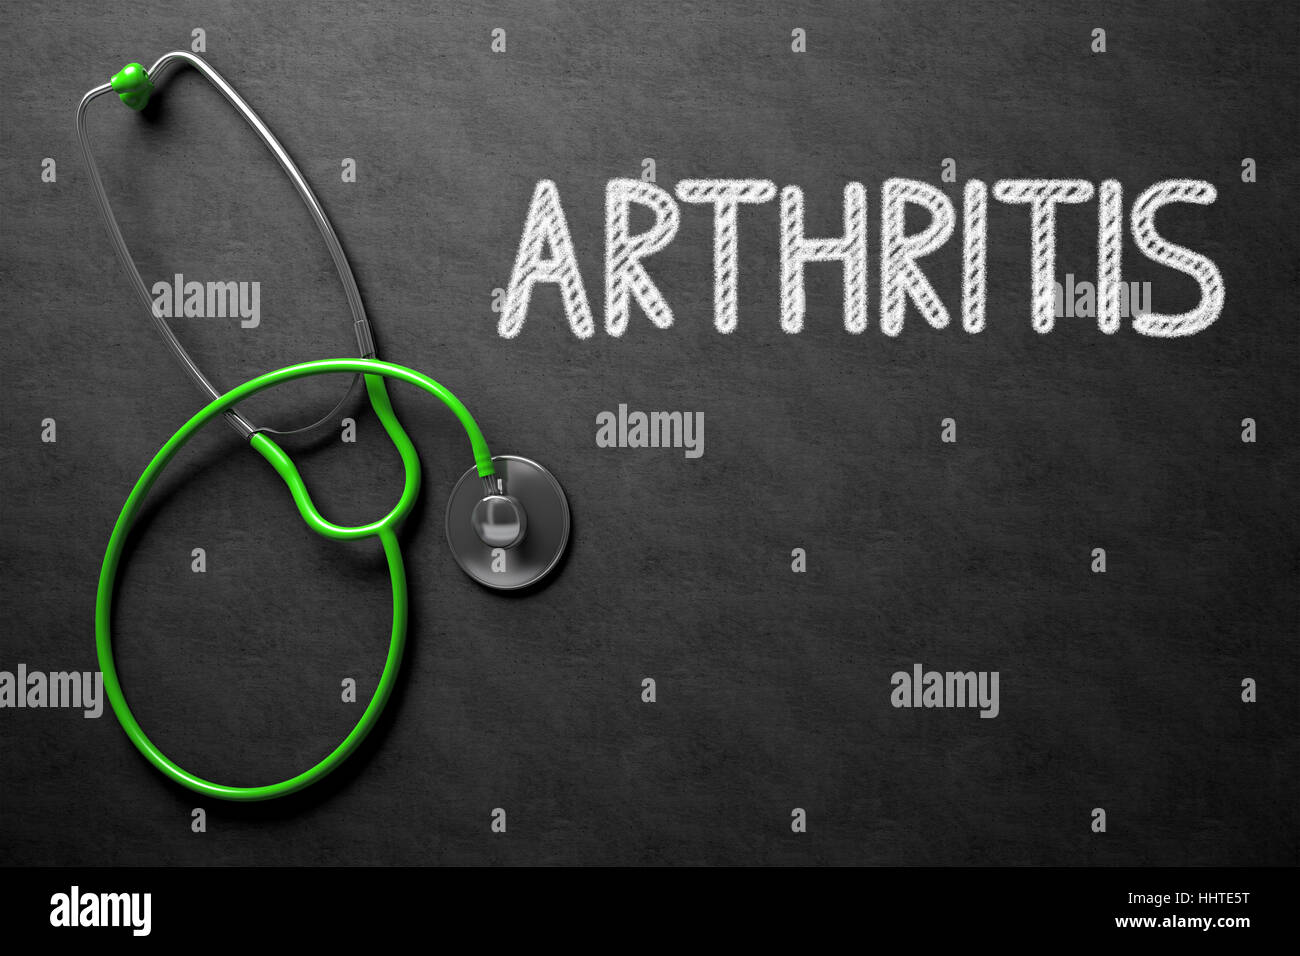 Arthritis - Text on Chalkboard. 3D Illustration. Stock Photo